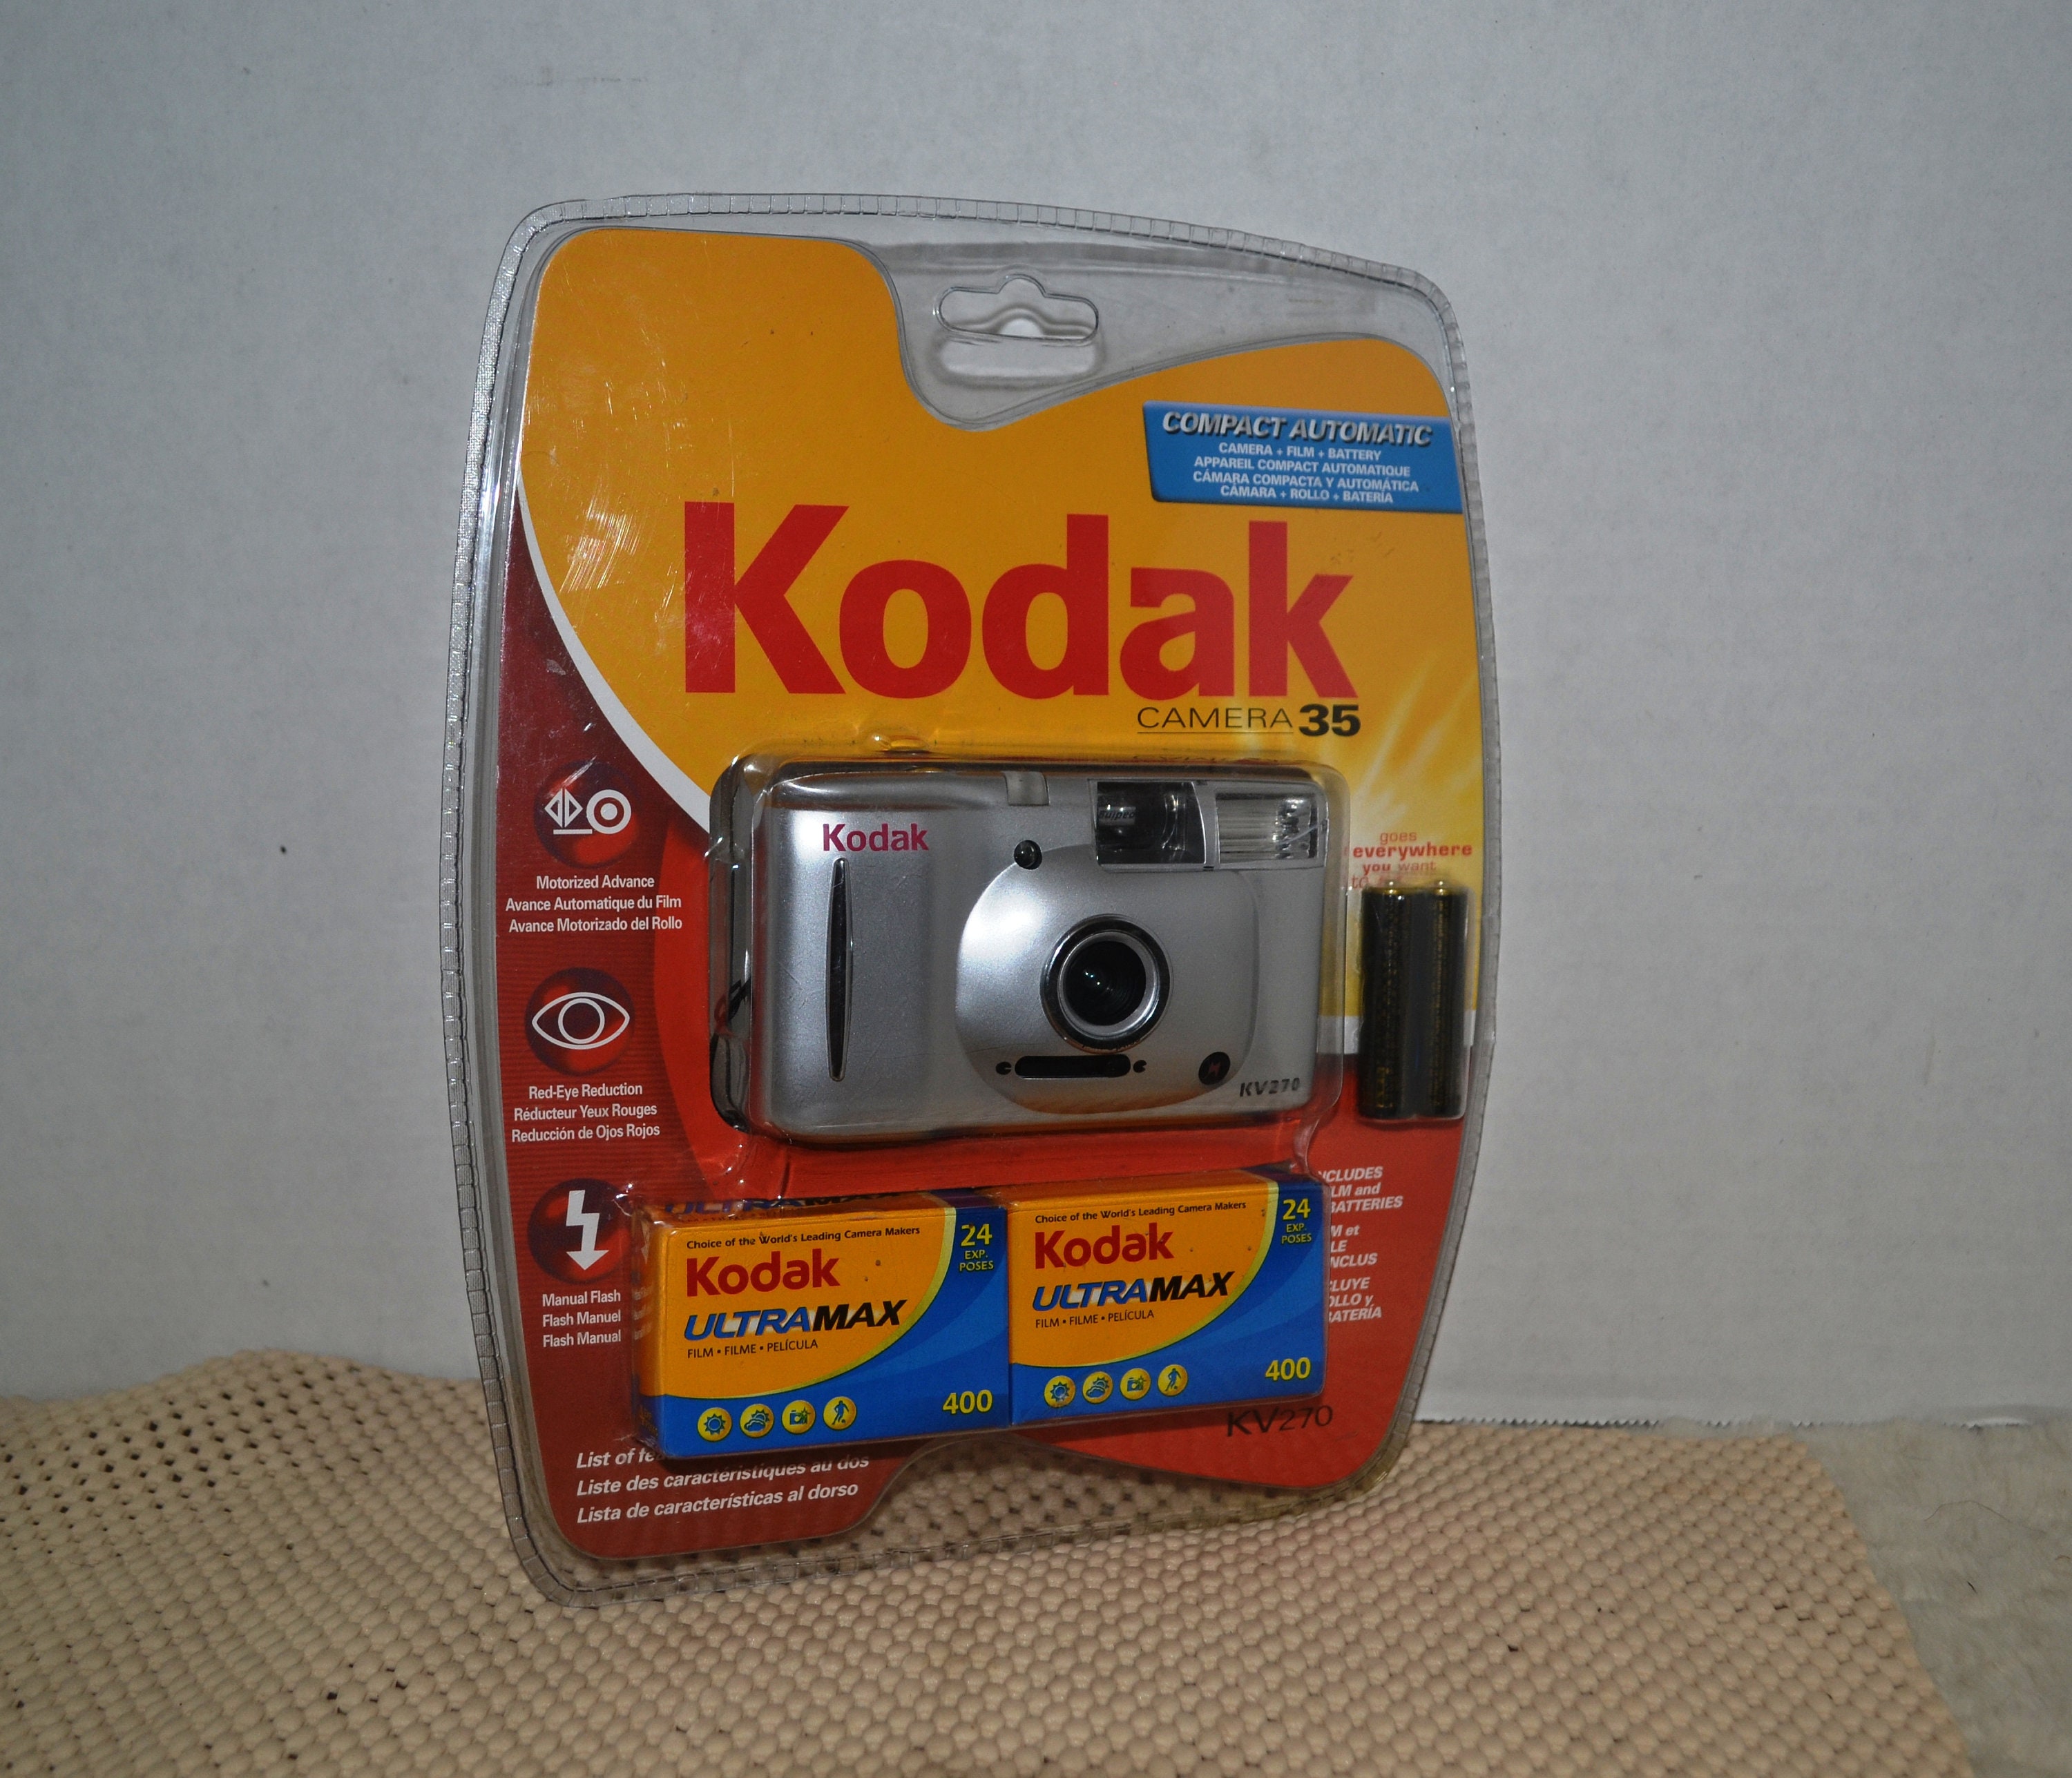 NIB Kodak Camera and Kodak Film!!